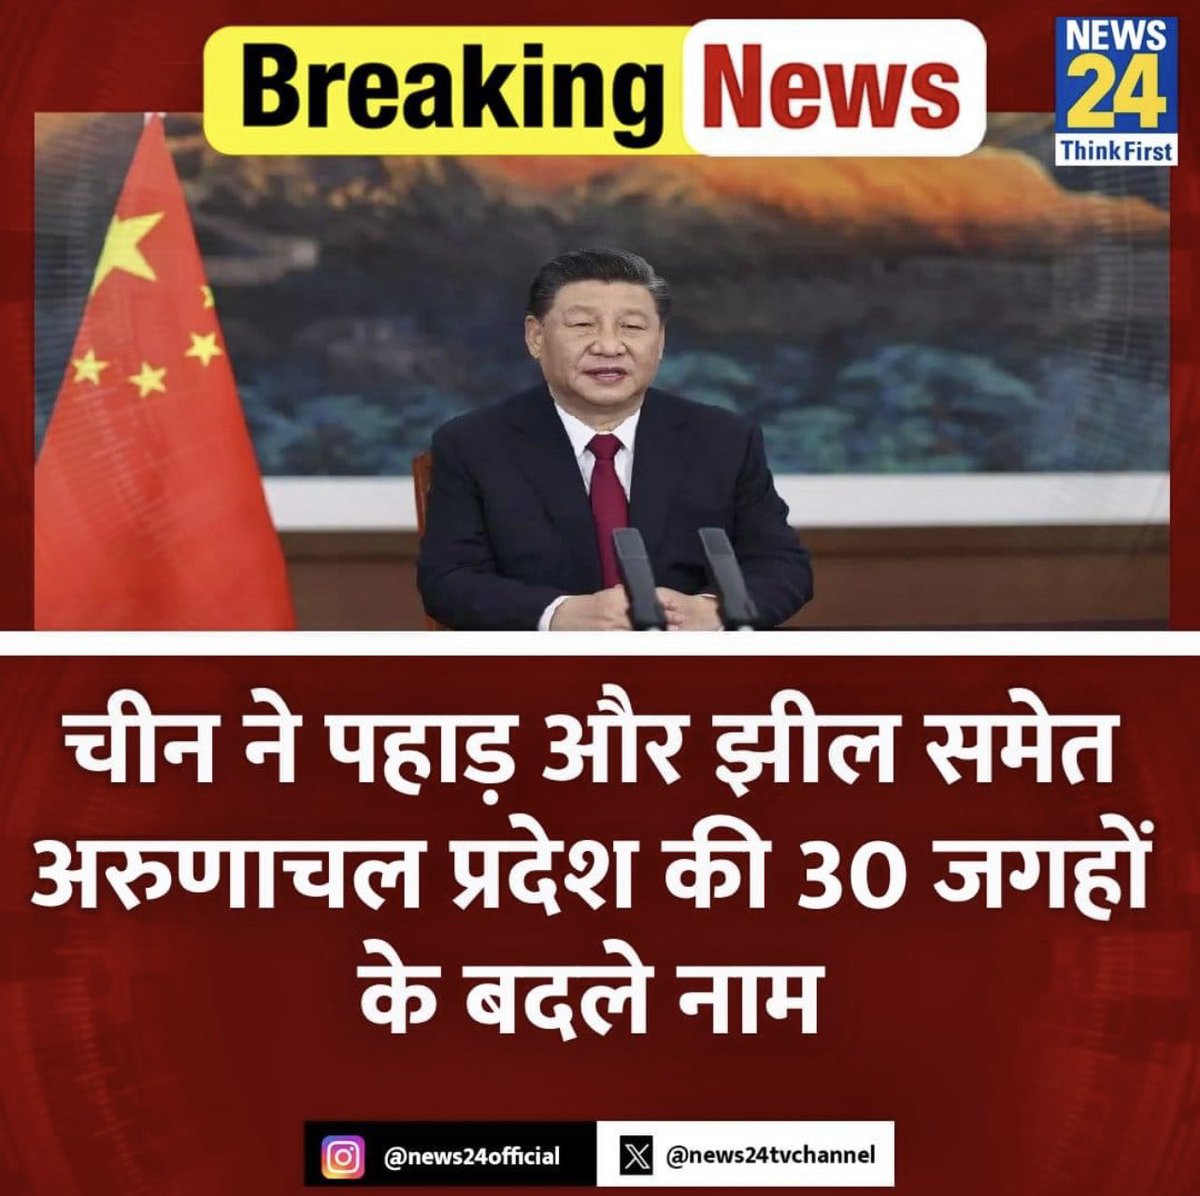 चीन ने पहाड़ और झील समेत अरुणाचल प्रदेश की 30 जगहों के बदले नाम... चीन के नागरिक मामलों के मंत्रालय ने इसे लेकर सूची भी जारी कर दी है... अरुणाचल प्रदेश को चीन अब जांगनान कहता है, चीन इसे और तिब्बती को स्वायत्त क्षेत्र का हिस्सा बताता है... @FirdausMahrukh